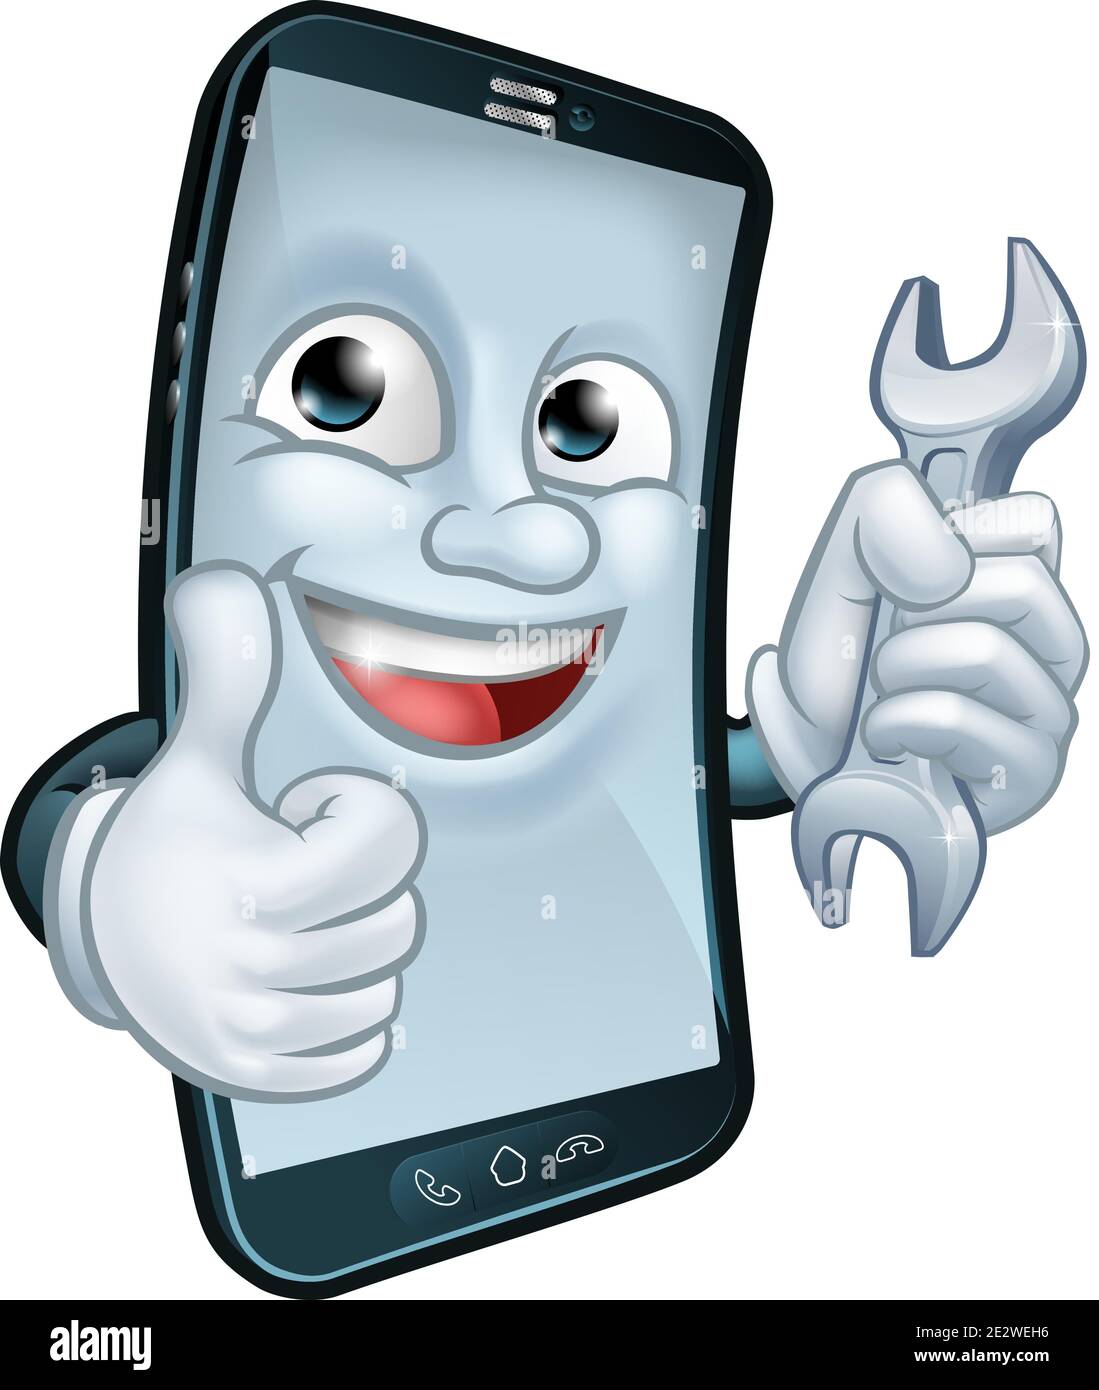 Mobile Phone Repair Spanner Thumbs Up Mascot Stock Vector